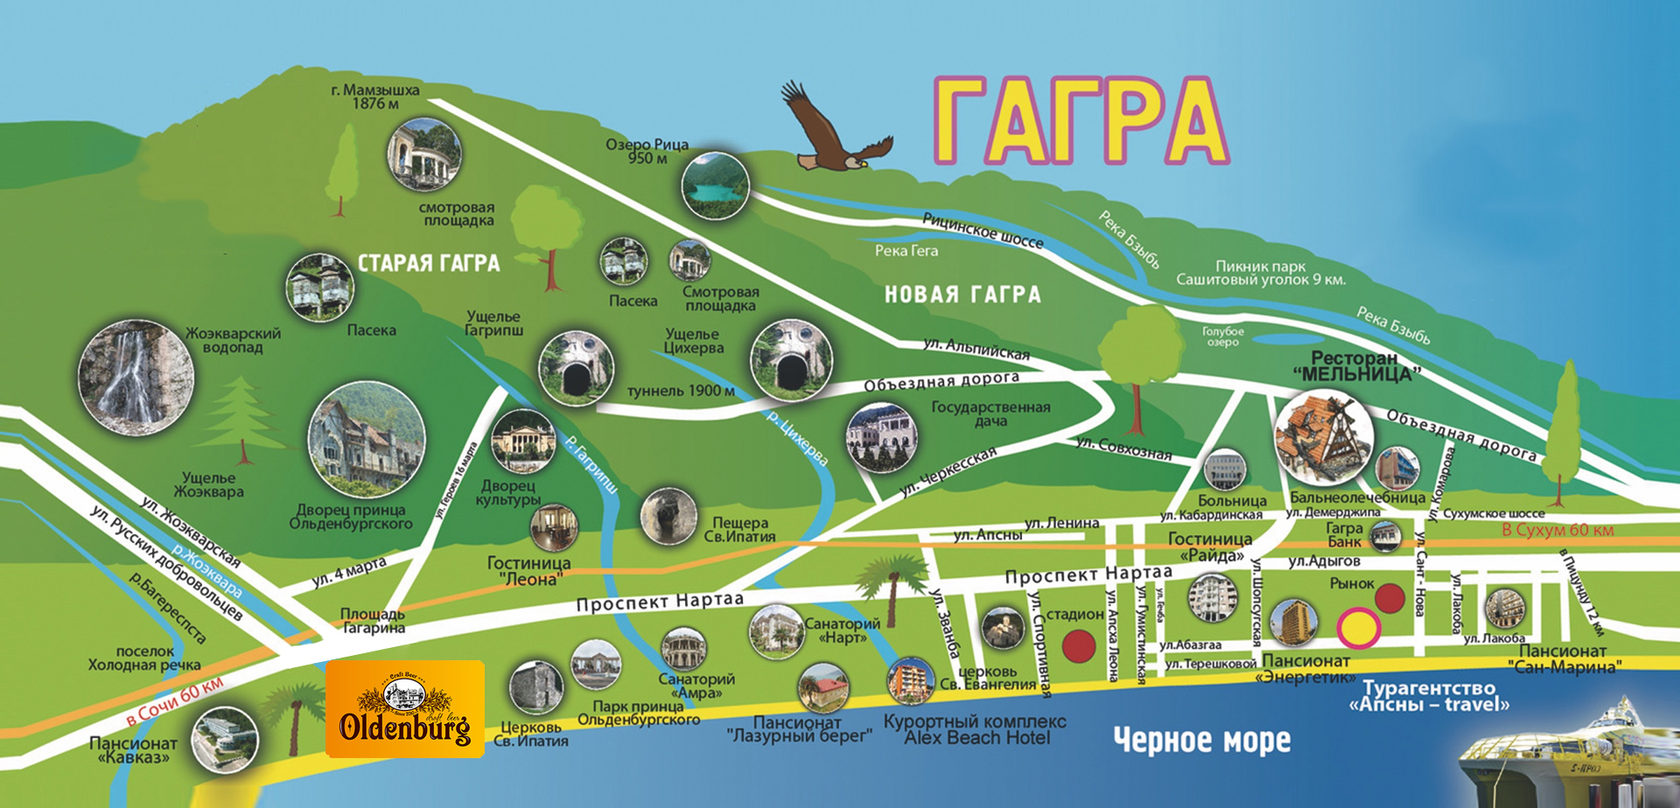 Гагра куда сходить. Карта Гагры с достопримечательностями. Новая Гагра Абхазия на карте. Карта достопримечательностей Гагры Абхазия. Туристическая карта Гагры Абхазия.